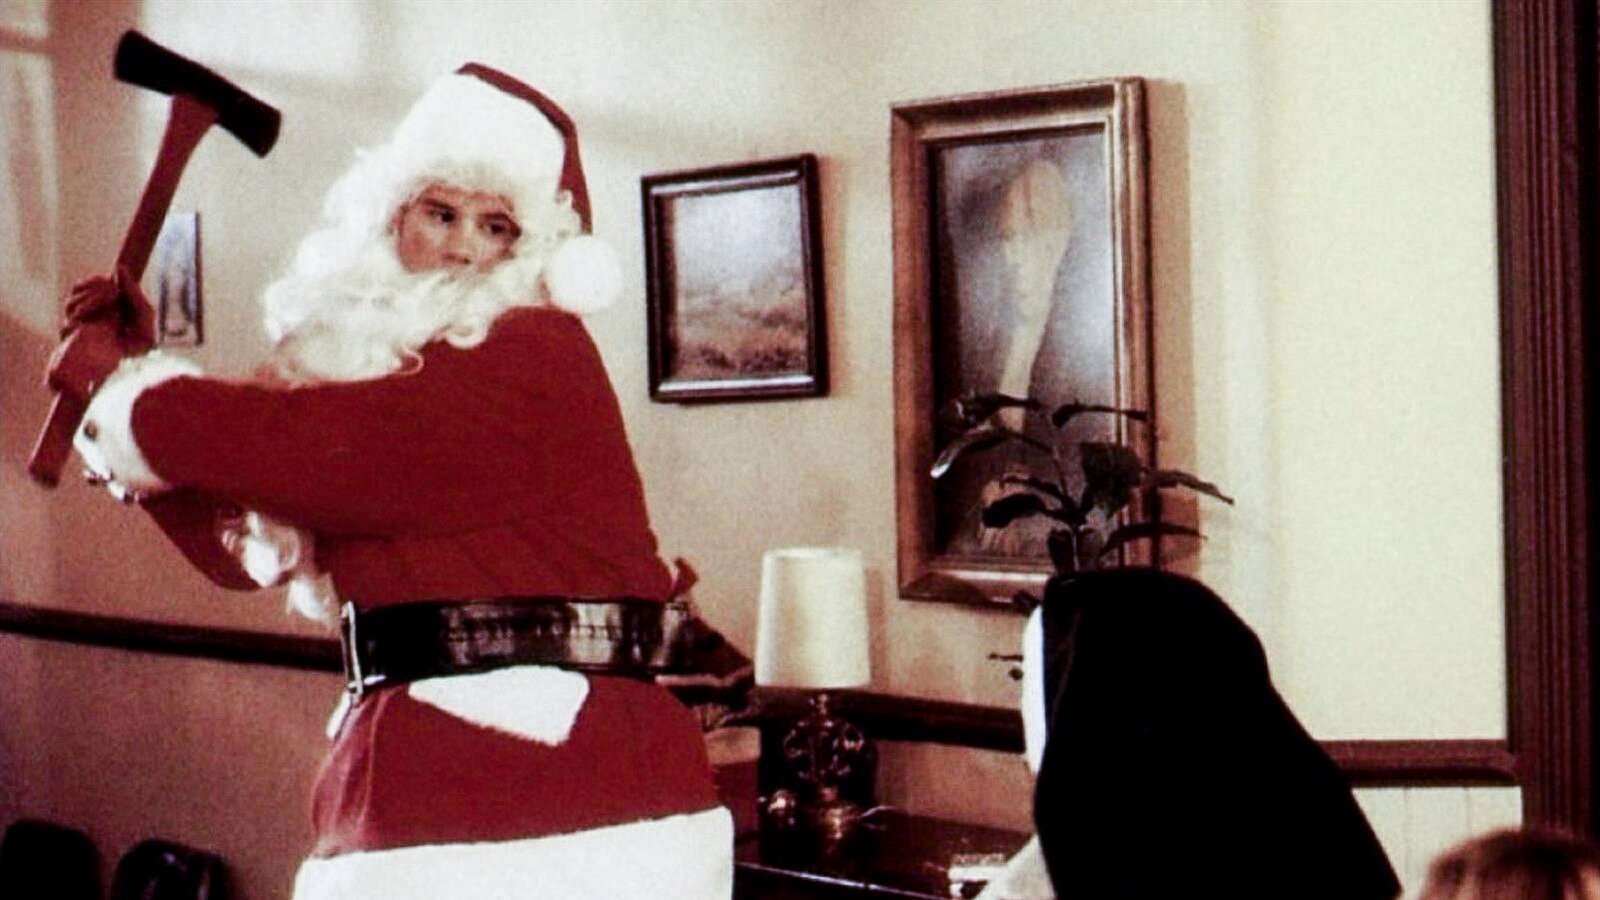 Santa swings an axe at a nun